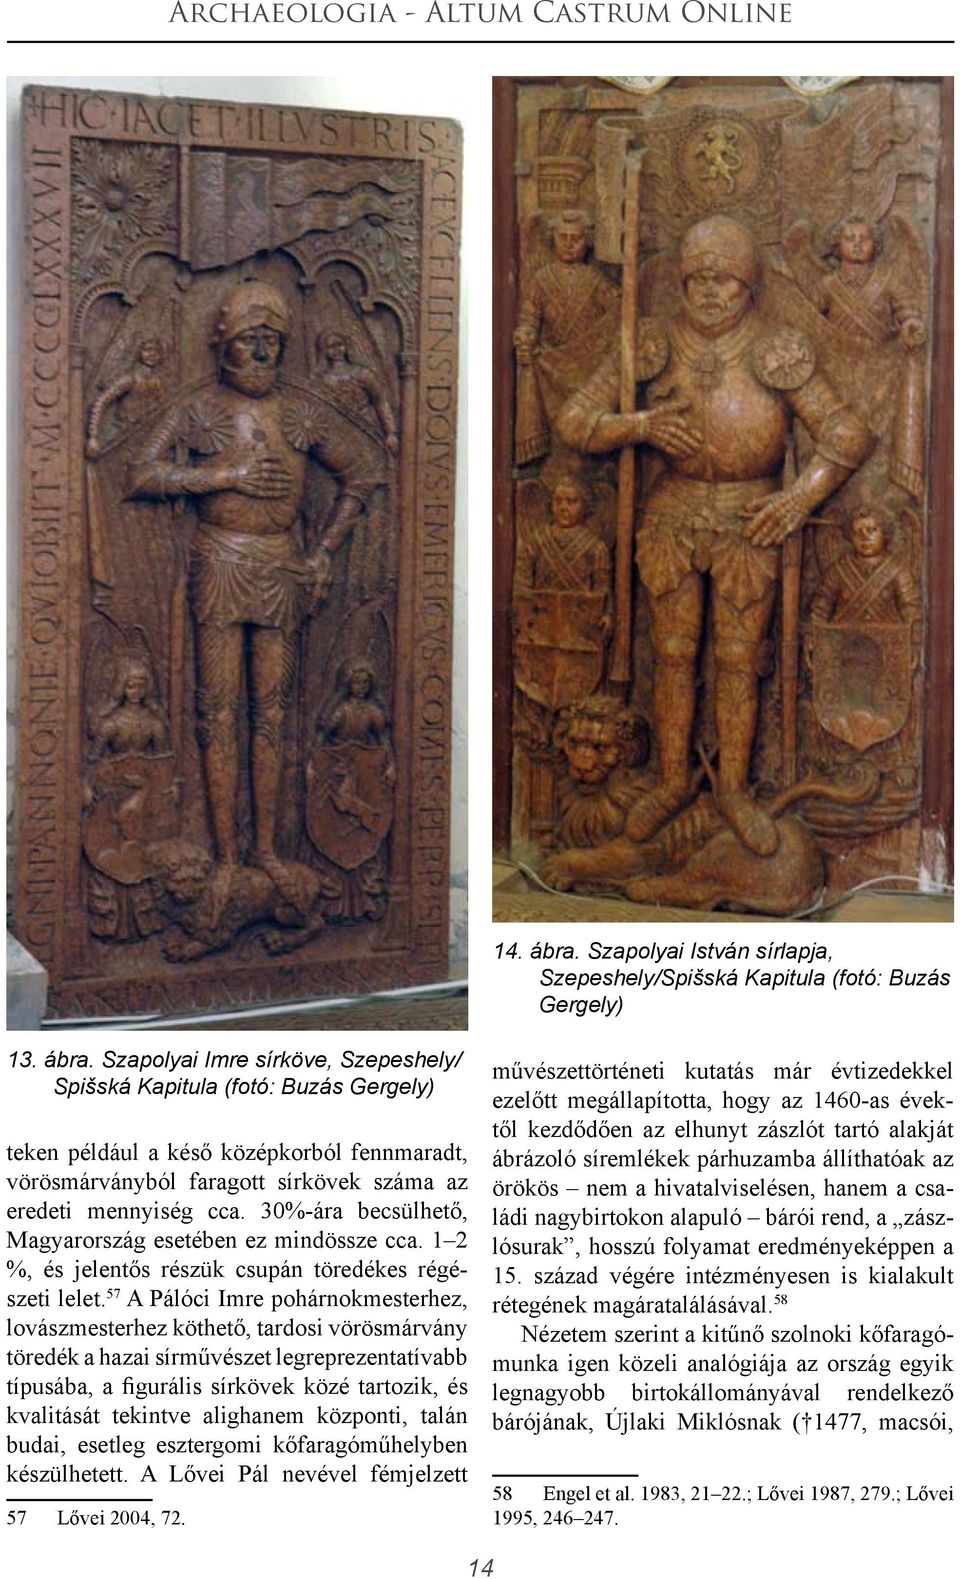 57 A Pálóci Imre pohárnokmesterhez, lovászmesterhez köthető, tardosi vörösmárvány töredék a hazai sírművészet legreprezentatívabb típusába, a figurális sírkövek közé tartozik, és kvalitását tekintve